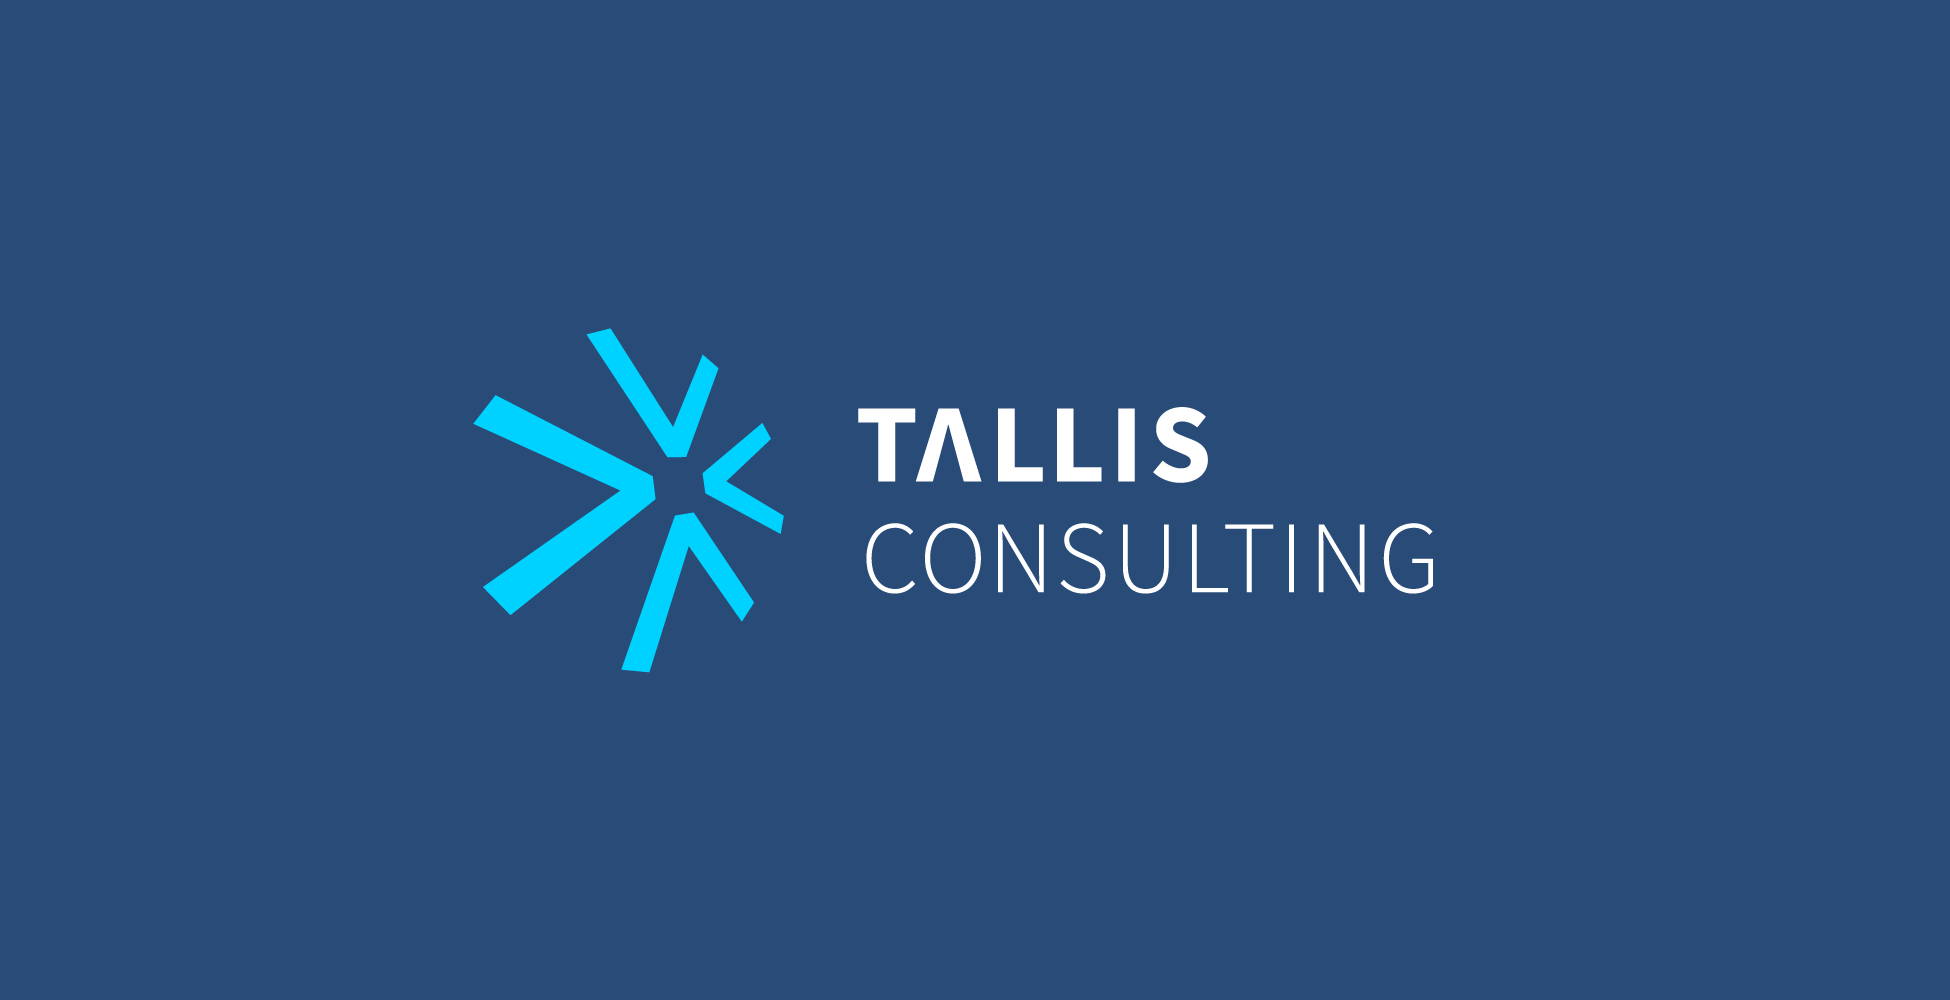 Tallis consulting logo design